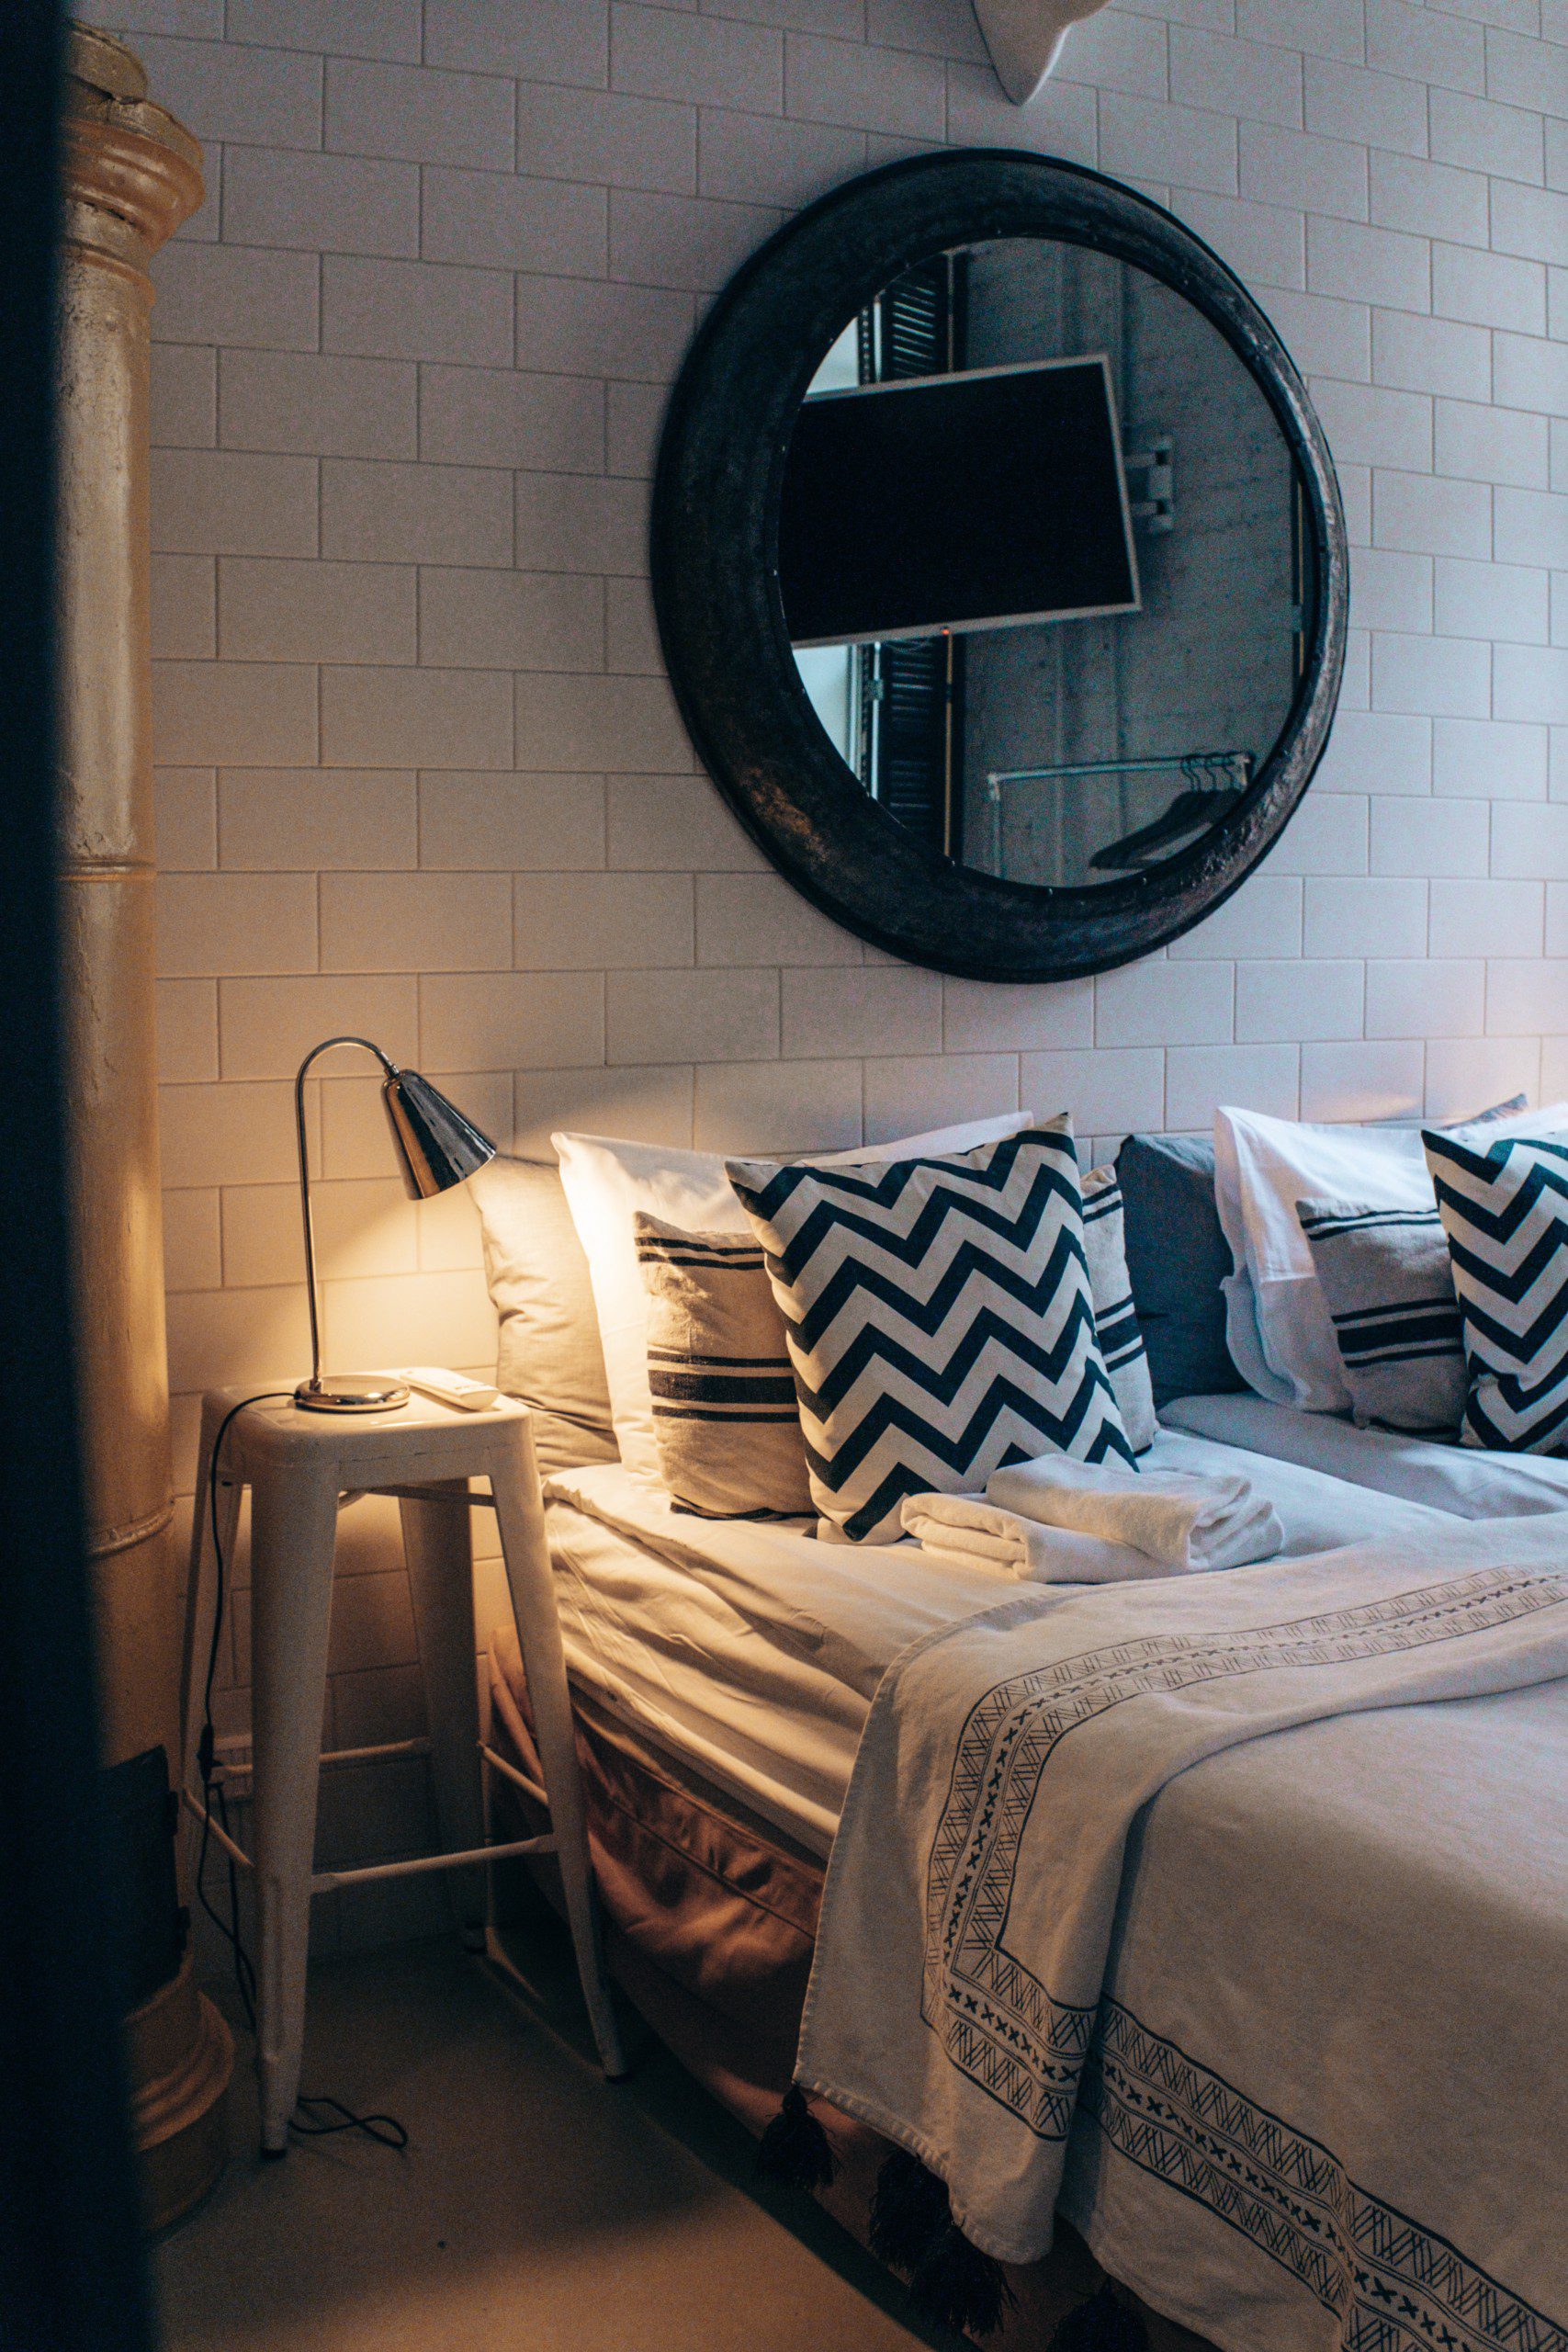 Cama de casal decorada com jogo de cama em preto e branco, almofadas estampadas na mesma cor, com espelho redondo atrás do móvel. 